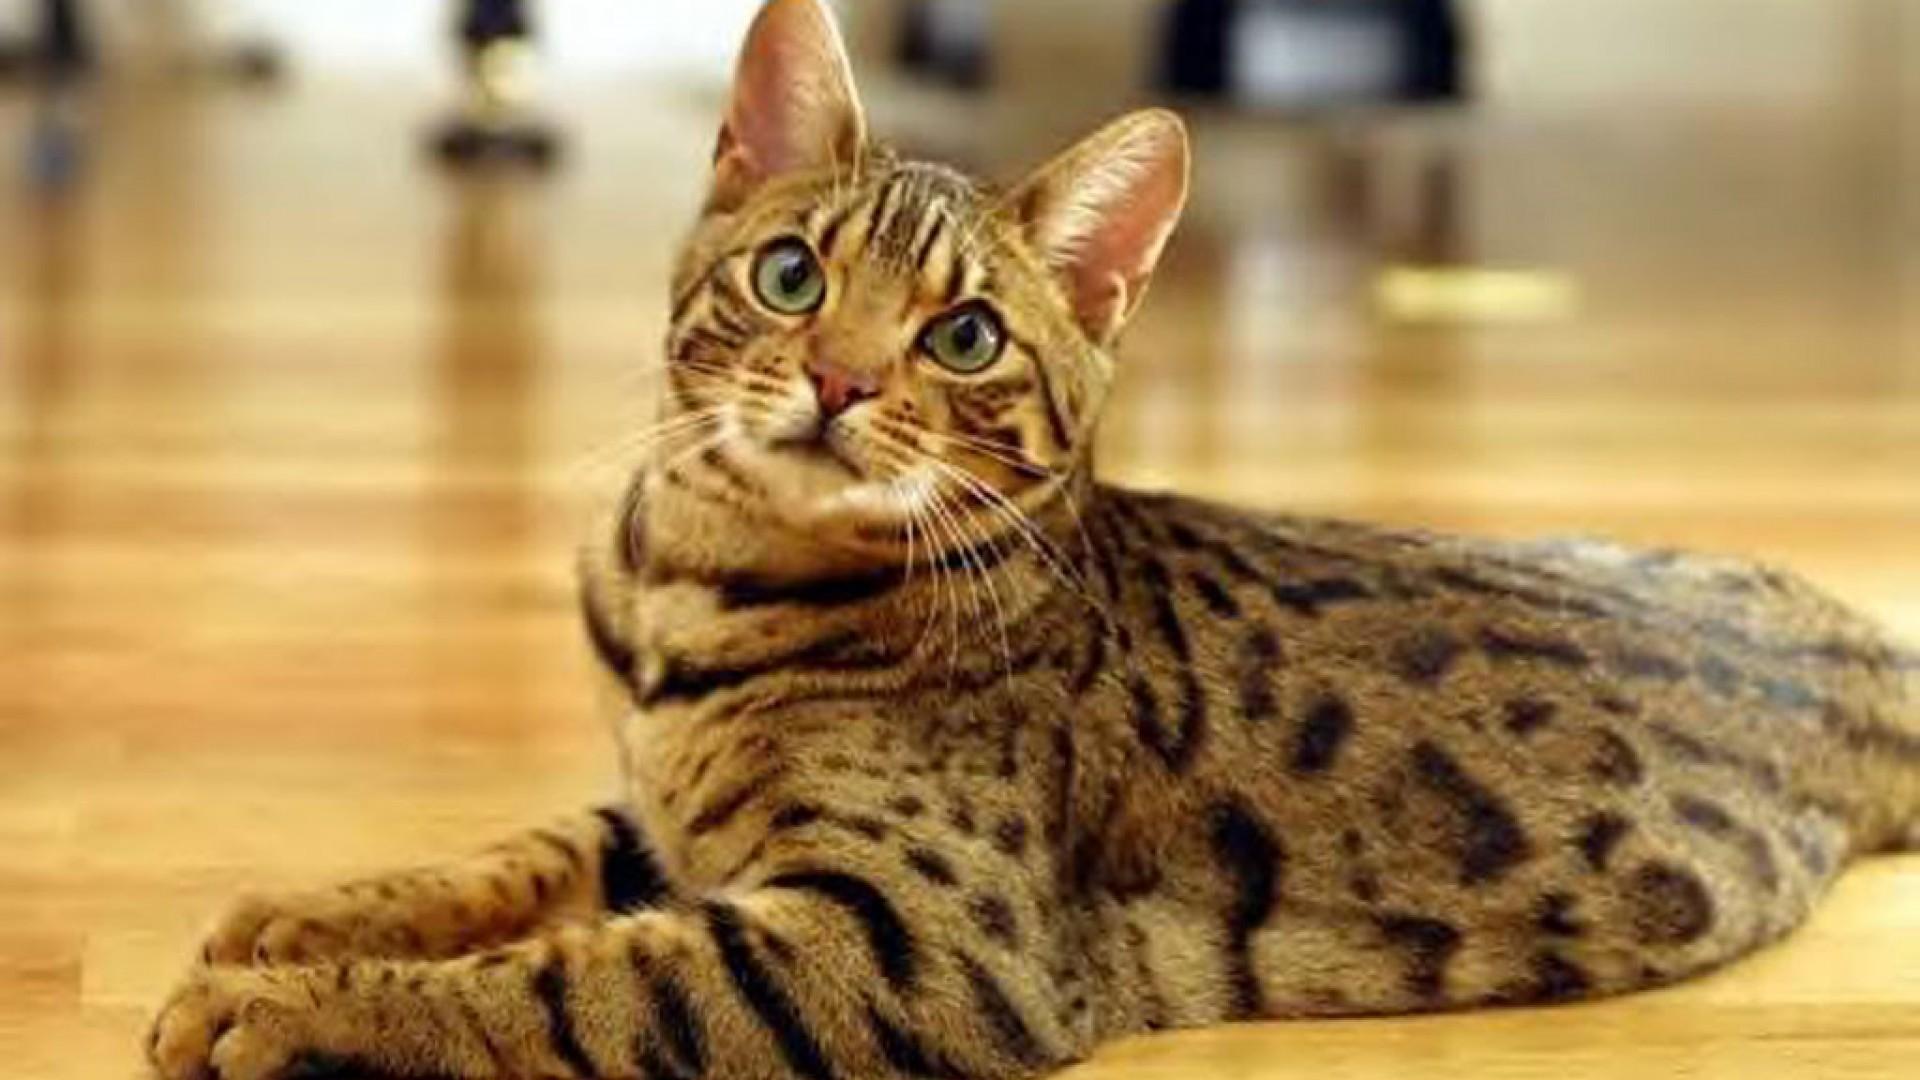 Bengal Cat